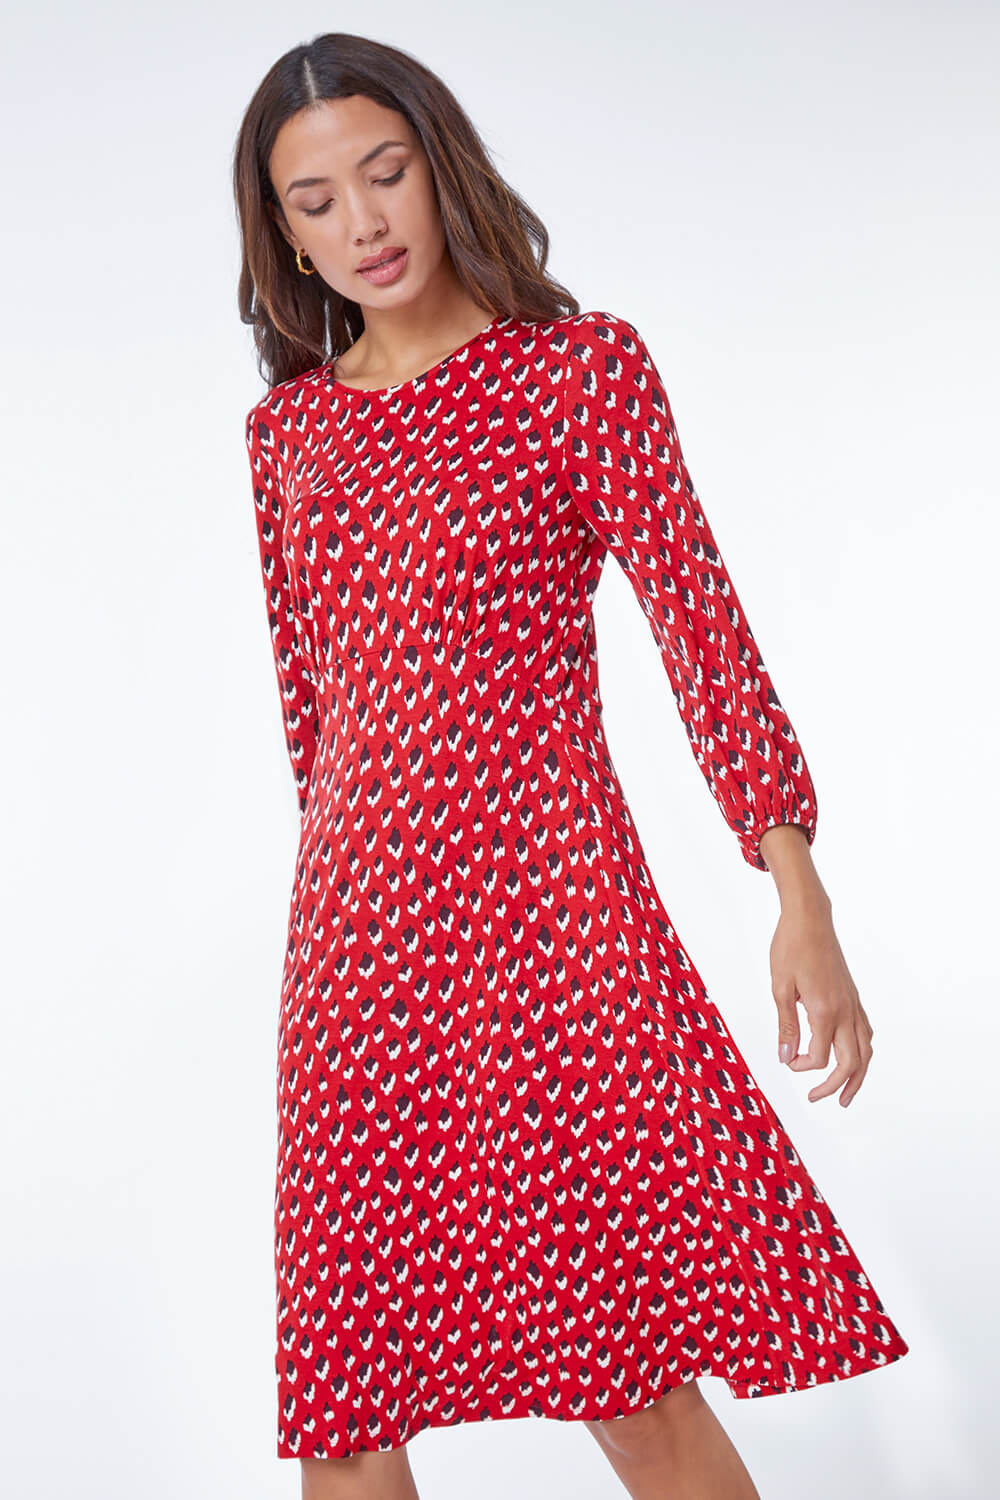 Red Abstract Animal Print Tea Dress, Image 1 of 5